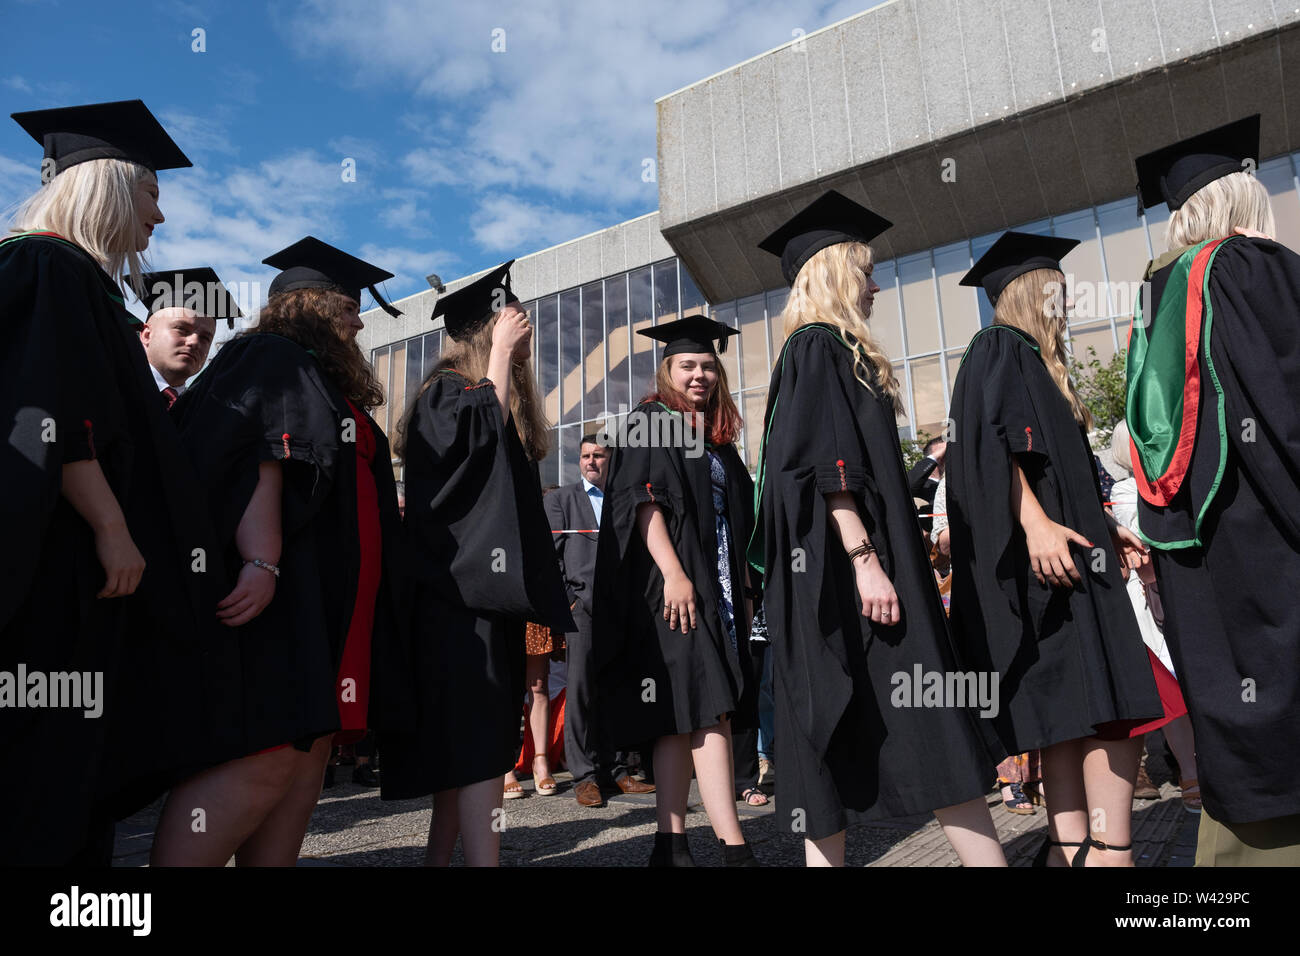 L'enseignement supérieur au Royaume-Uni - les élèves qui réussissent à la remise des diplômes à l'université d'Aberystwyth, après avoir reçu leur diplôme, portant leurs chapeaux traditionnels et des blouses. Juillet 2019 Banque D'Images